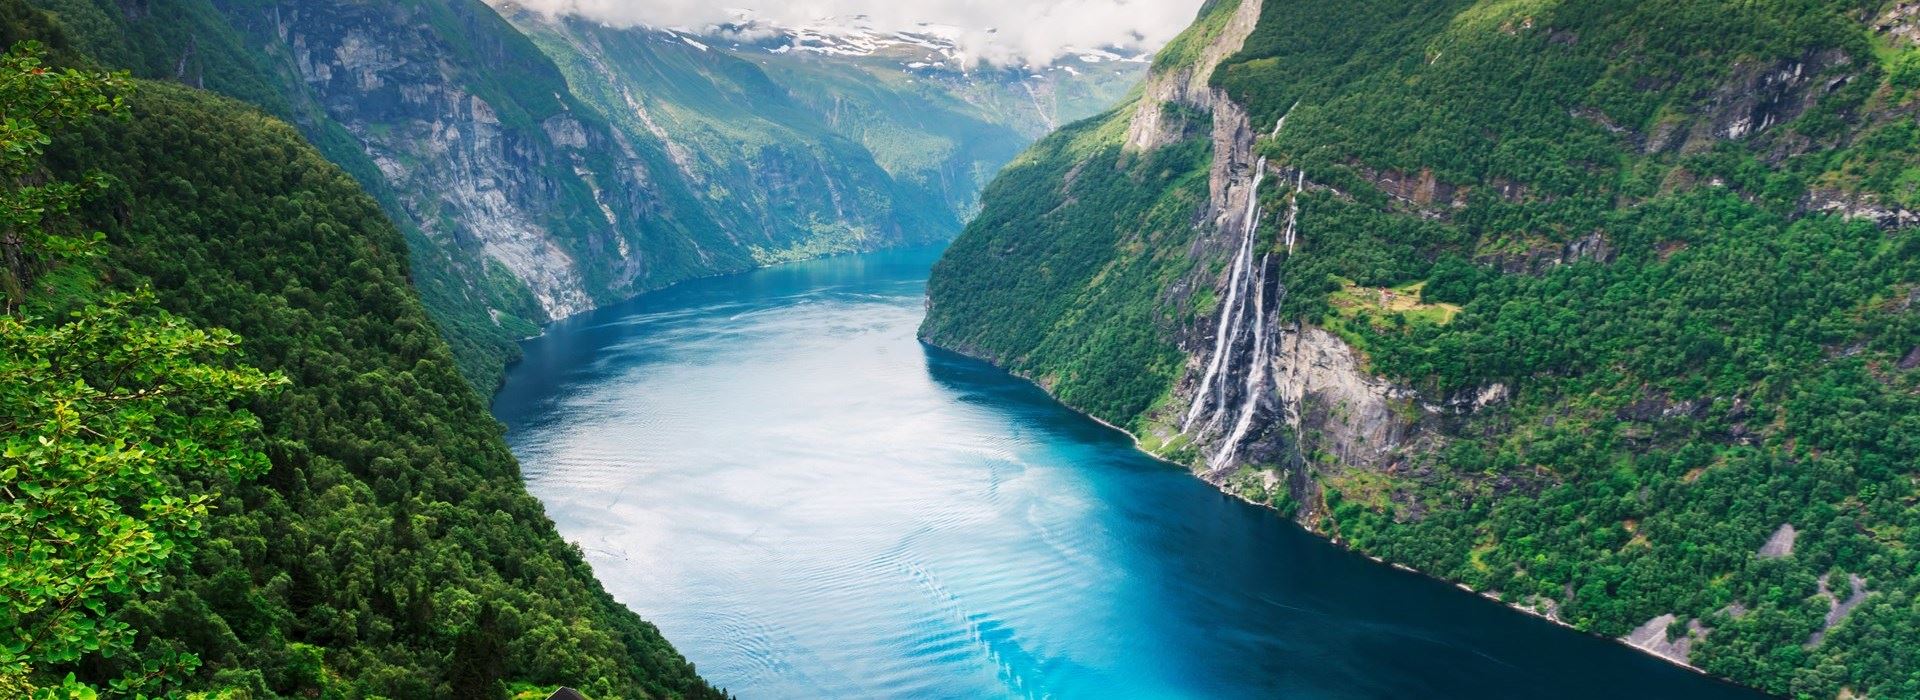 Vakantie Noorwegen Zomer 2021 Corona Noorse Fjorden Premium Premium Tours